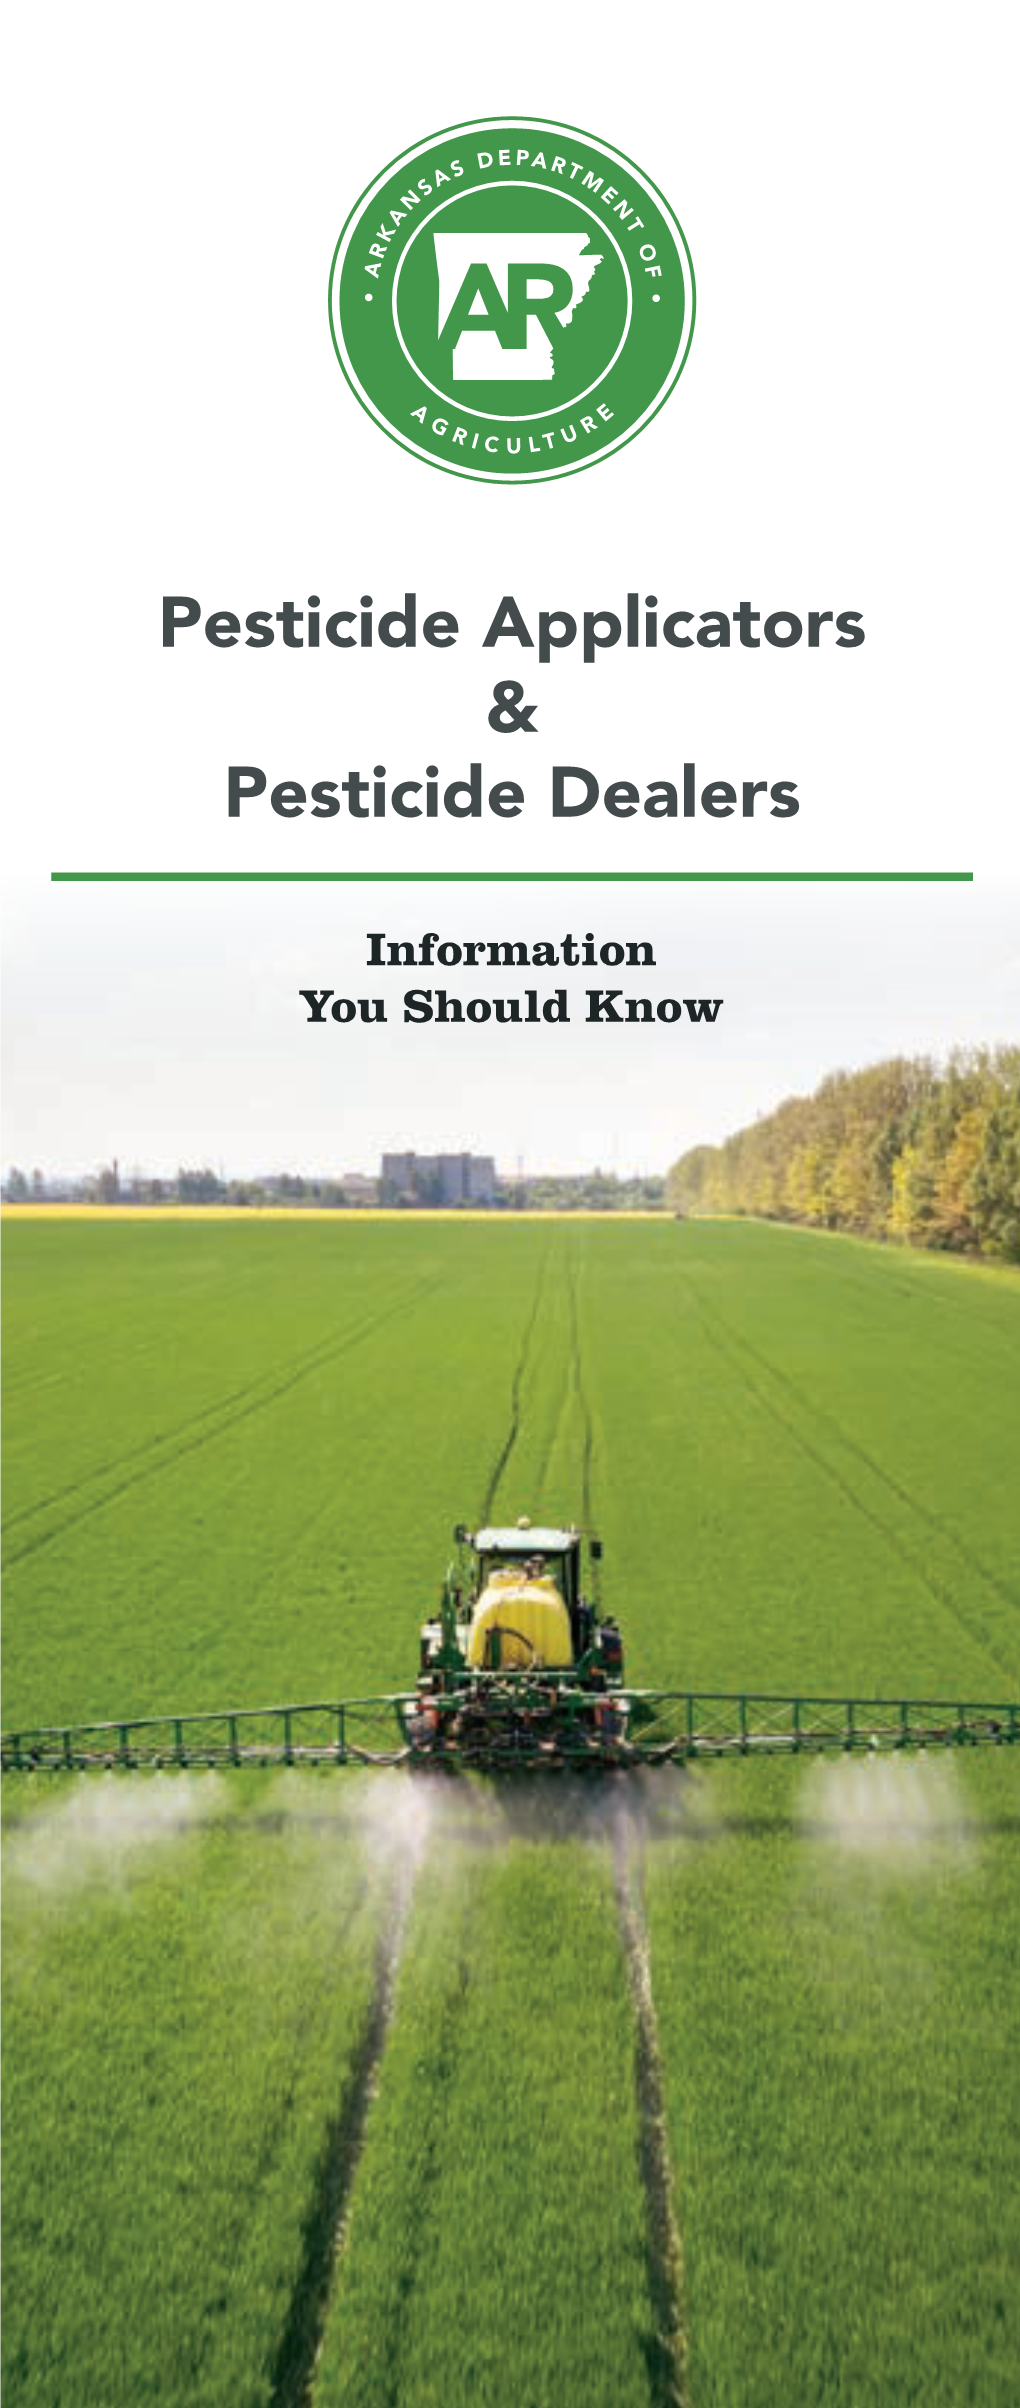 Pesticide Applicators & Pesticide Dealers